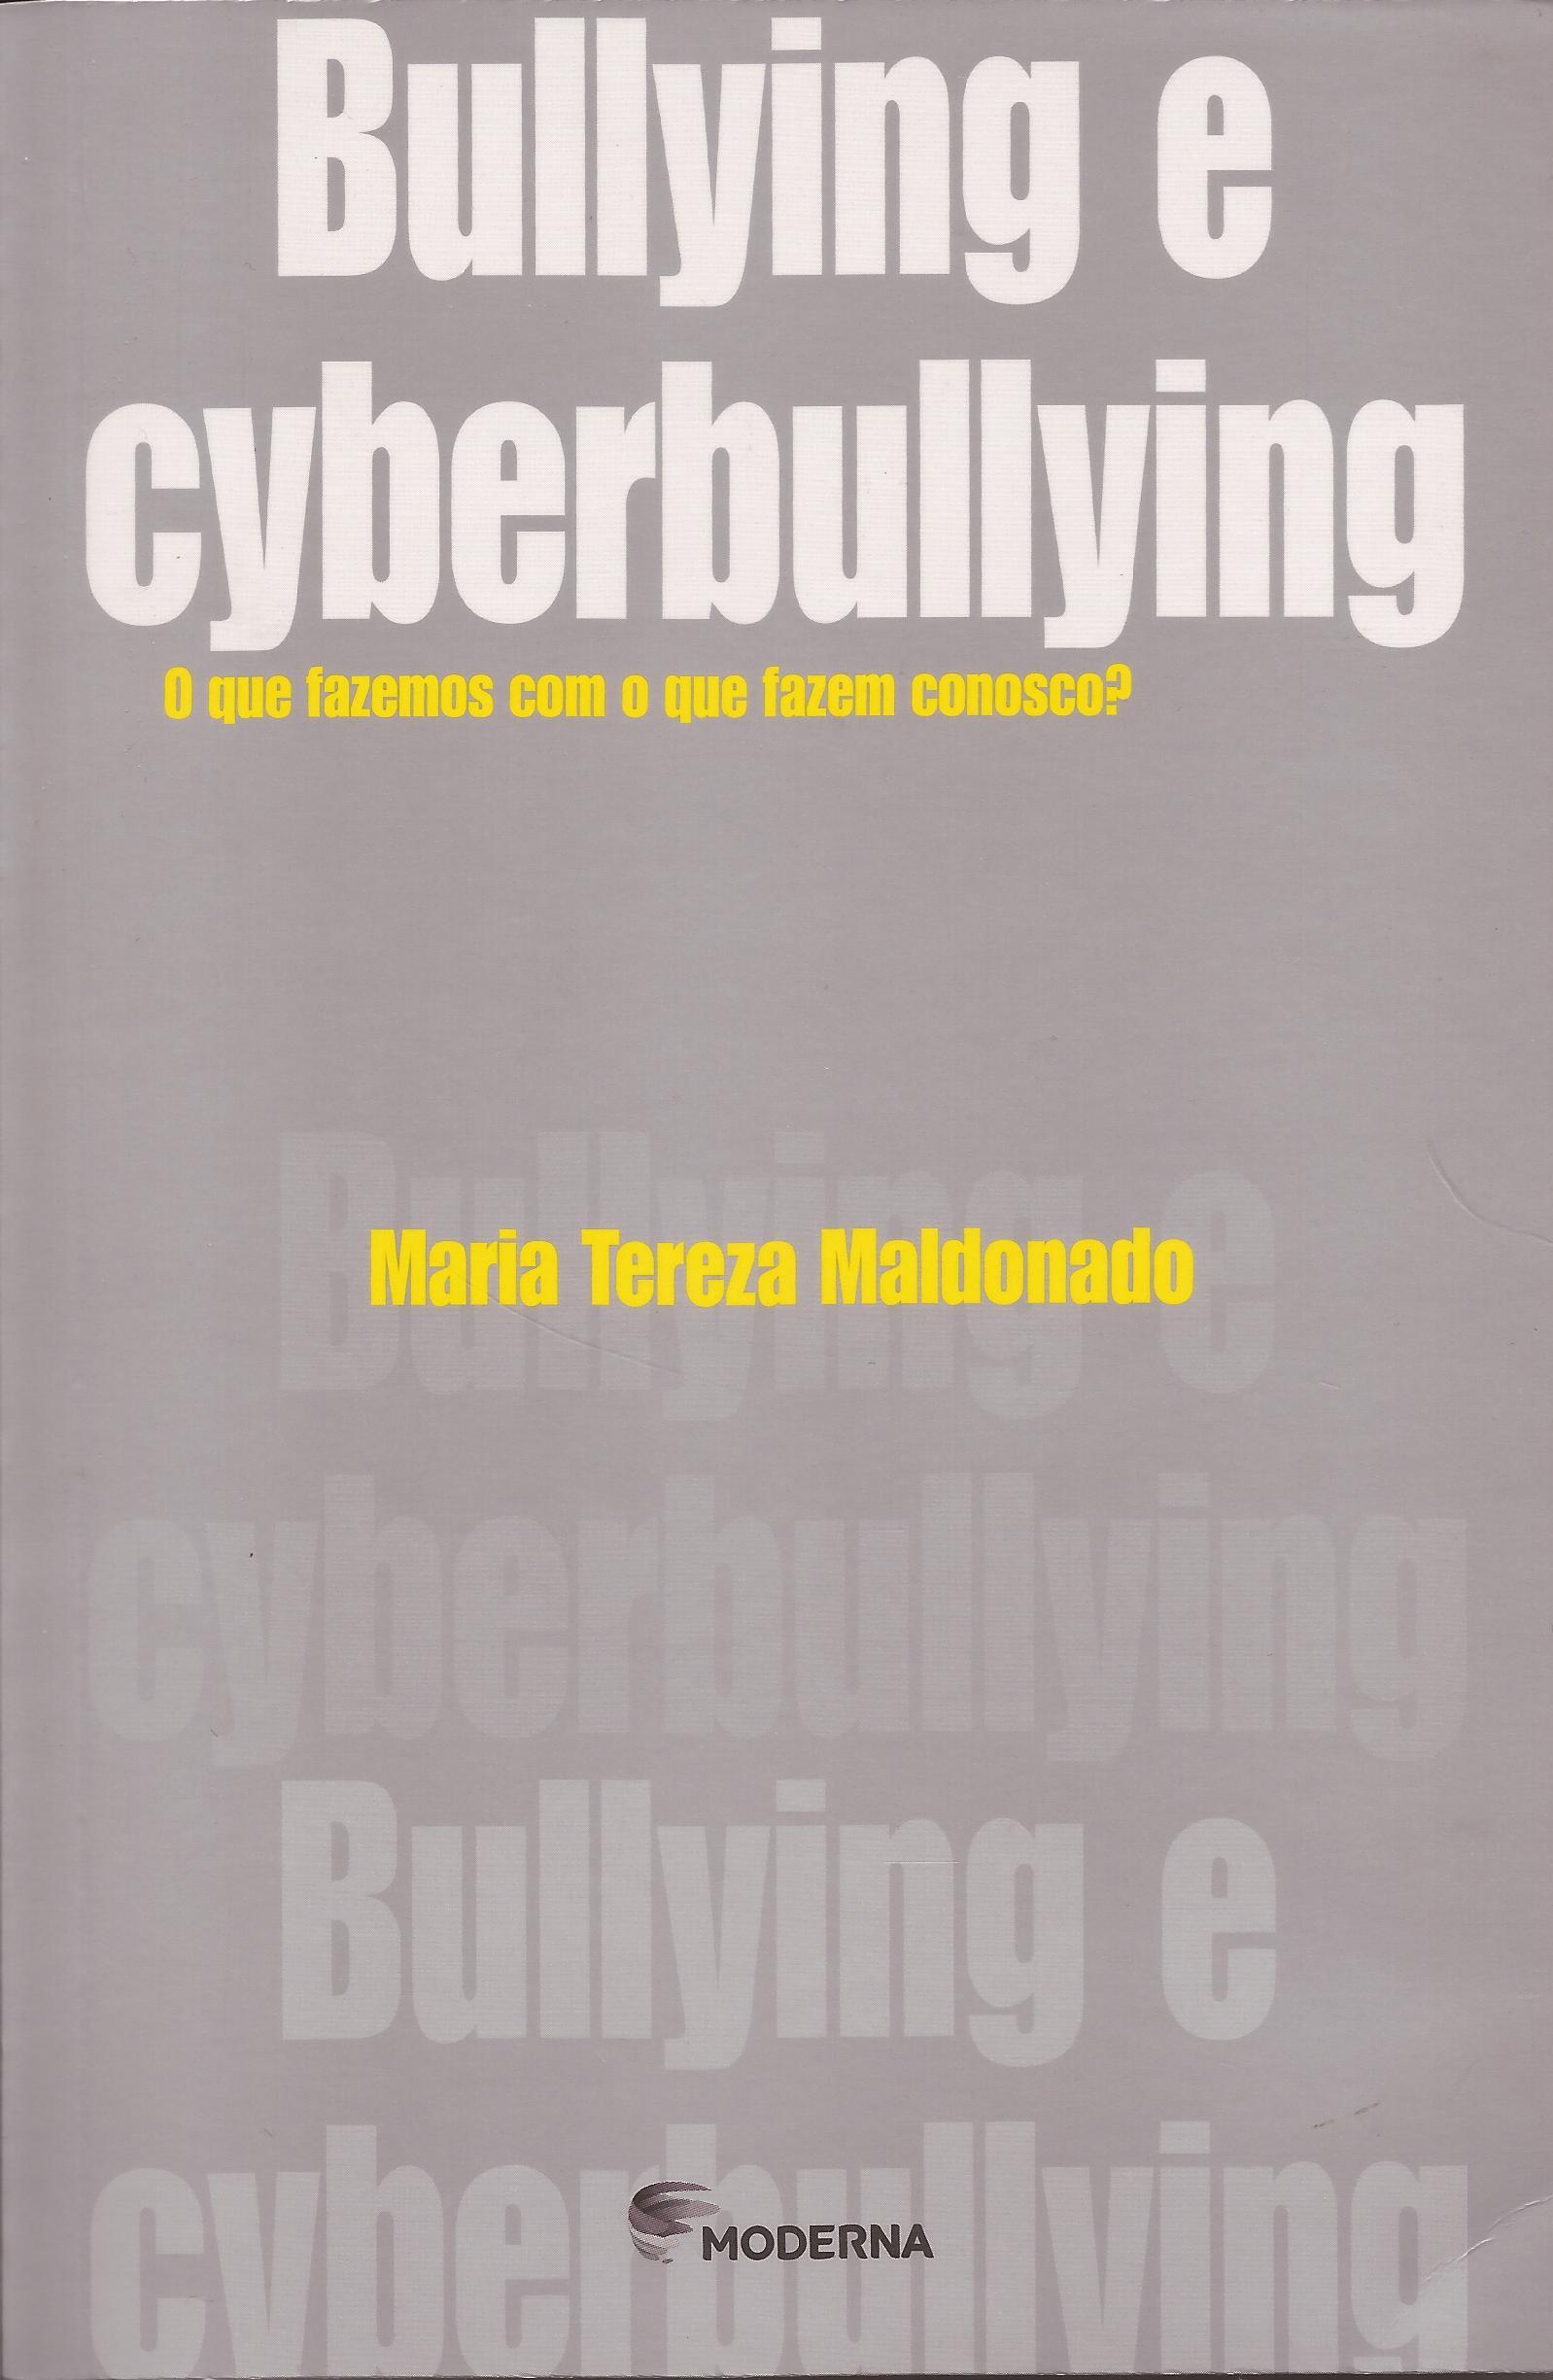 Bullying e cyberbullying: O que fazemos como o que fazem conosco?